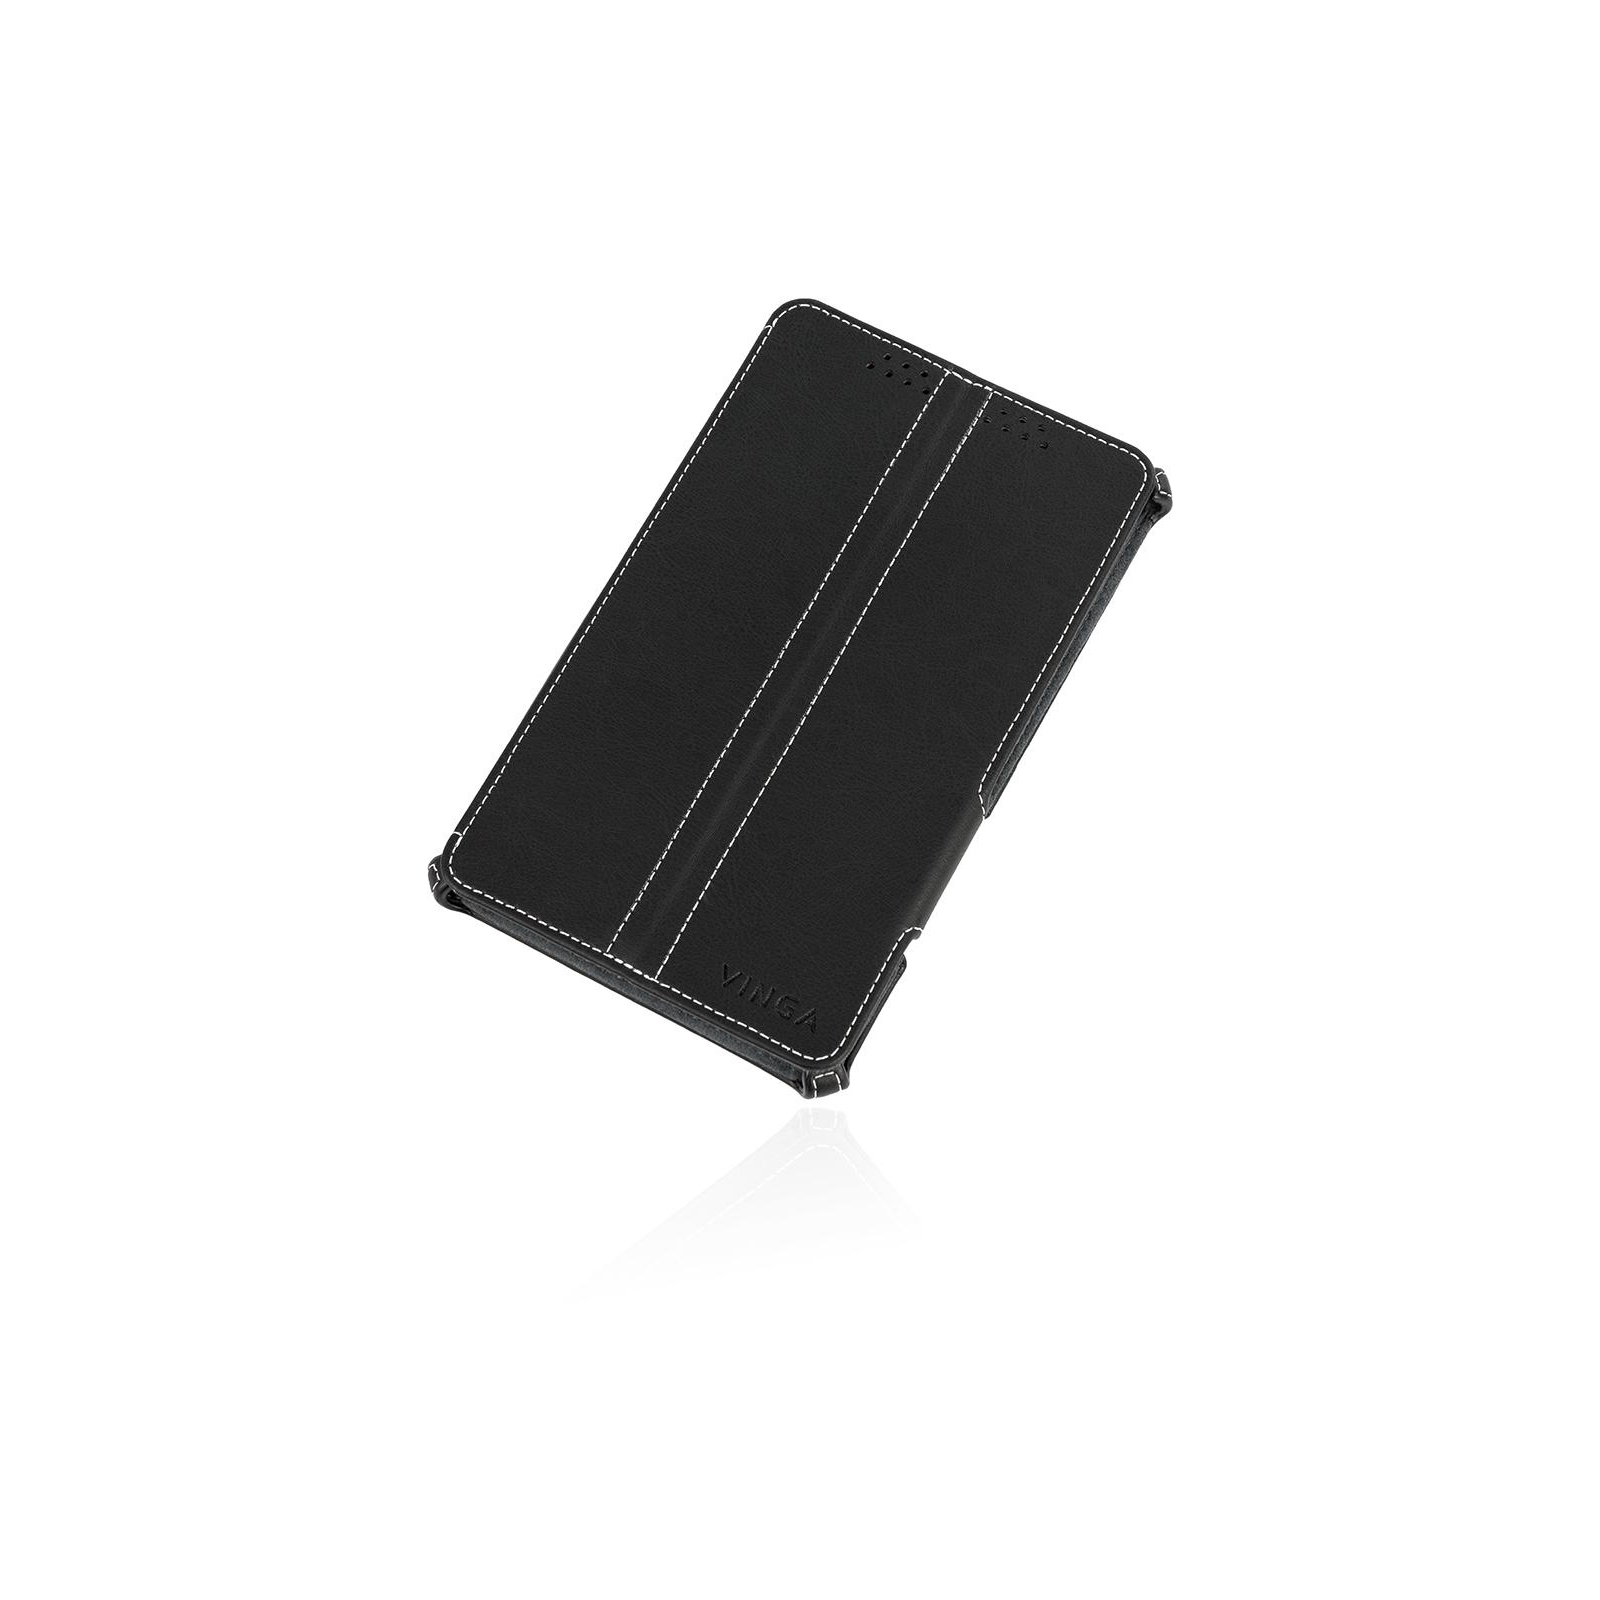 Чехол для планшета ASUS ZenPad 8.0 Z380M black Vinga (VNZPZ380M) изображение 7